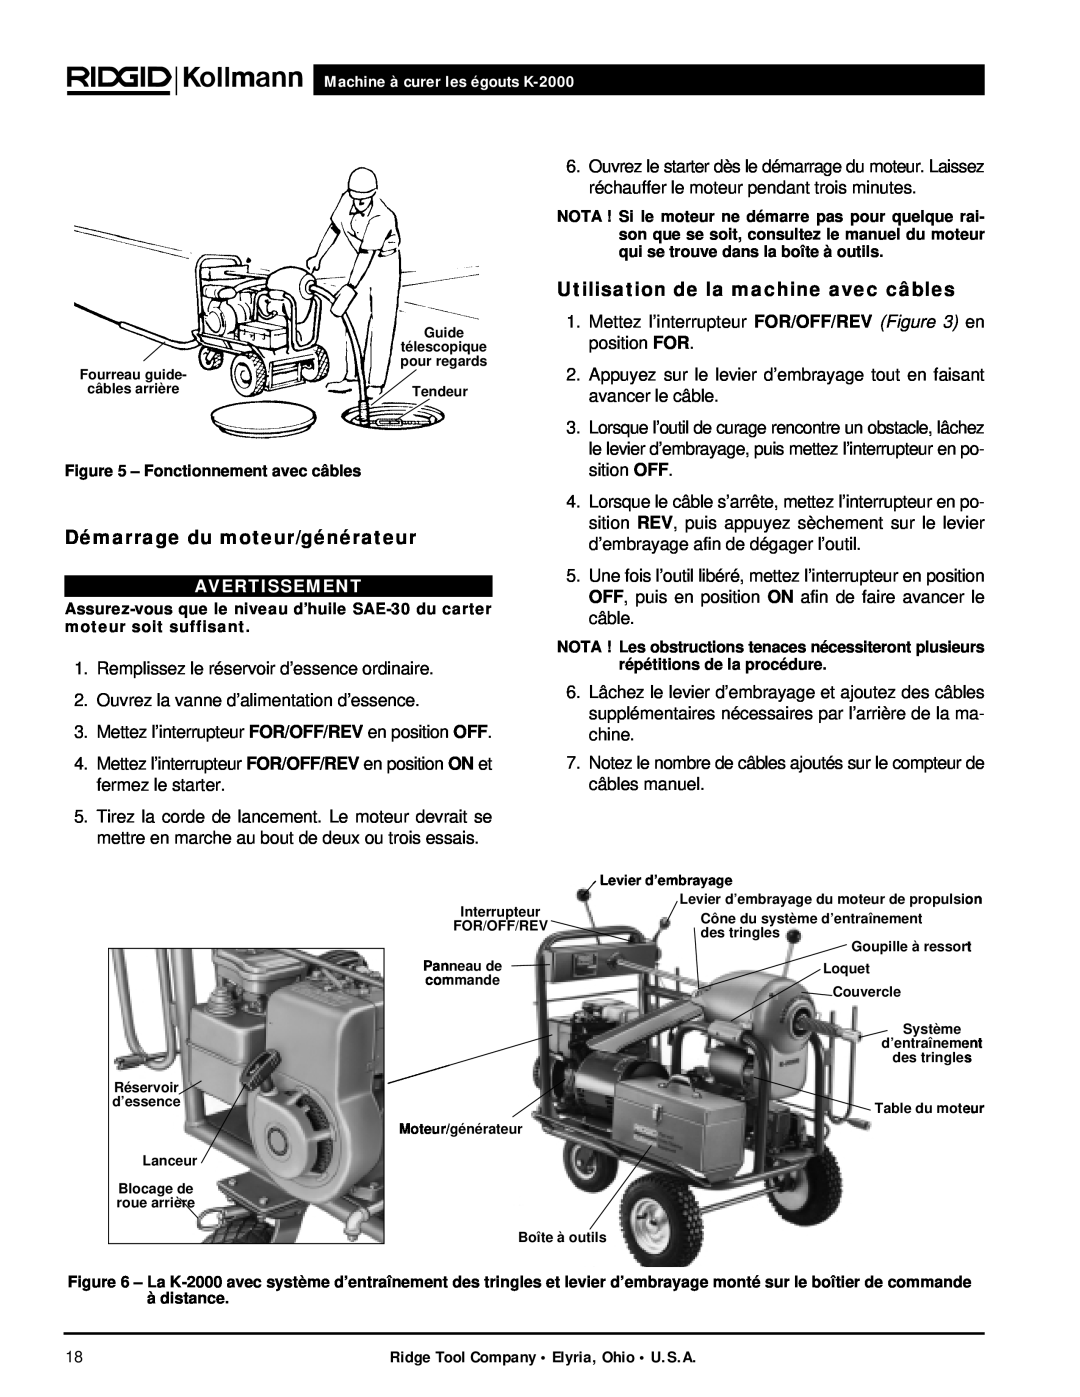 RIDGID K-2000 manual Démarrage du moteur/générateur, Utilisation de la machine avec câbles, Avertissement 